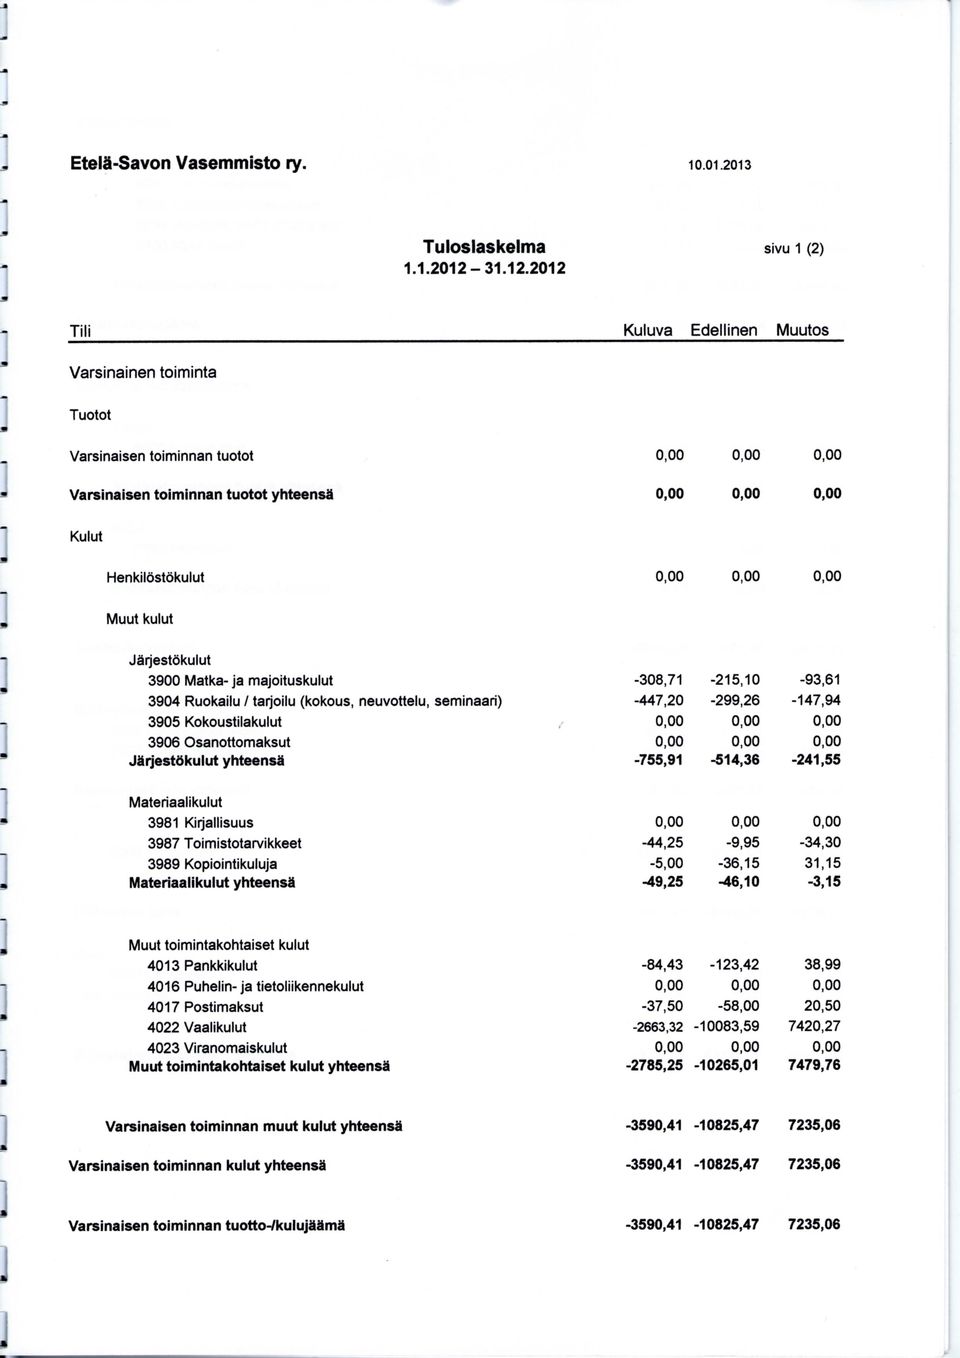 2012 Till sivu 1 (2) Kuluva Edellinen Muutos Varsinainen toiminta Tuotot Varsinaisen toiminnan tuotot Varsinaisen toiminnan tuotot yhteensa -308,71 447,20